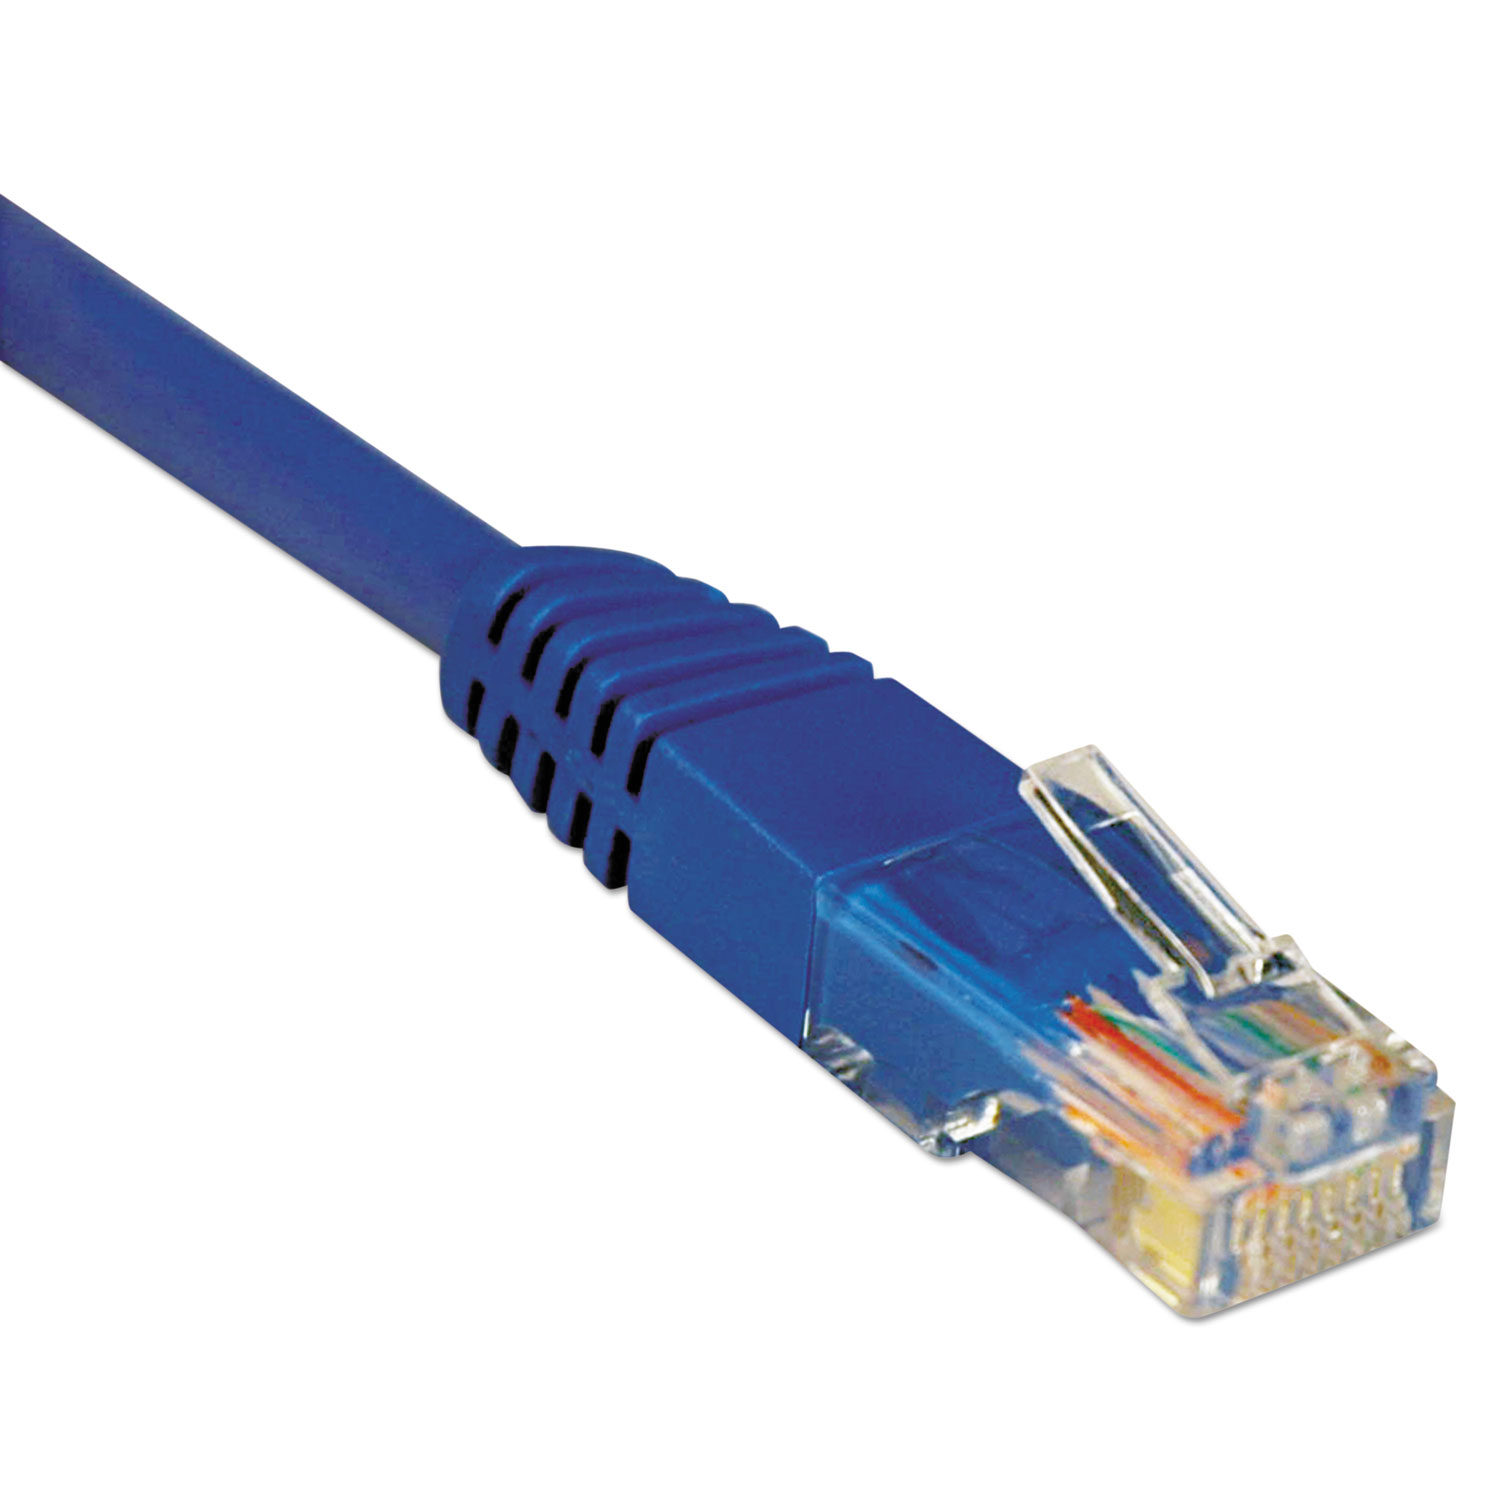  Tripp Lite N002-007-BL Cat5e 350MHz Molded Patch Cable, RJ45 (M/M), 7 ft., Blue (TRPN002007BL) 